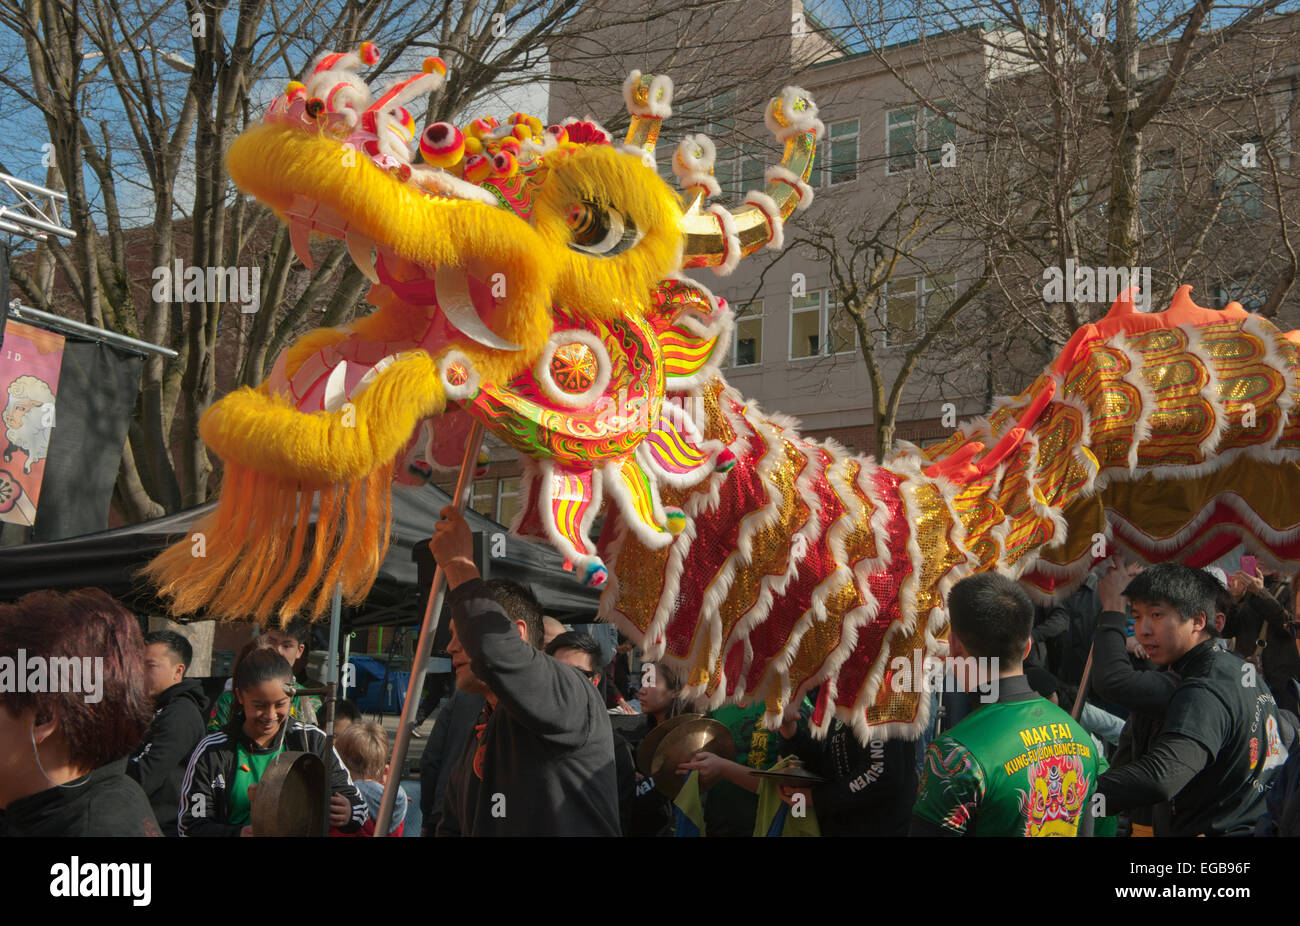 La danza del dragón, las celebraciones de Año Nuevo Lunar chino, Seattle, Chinatown, Febrero 21, 2015 Foto de stock